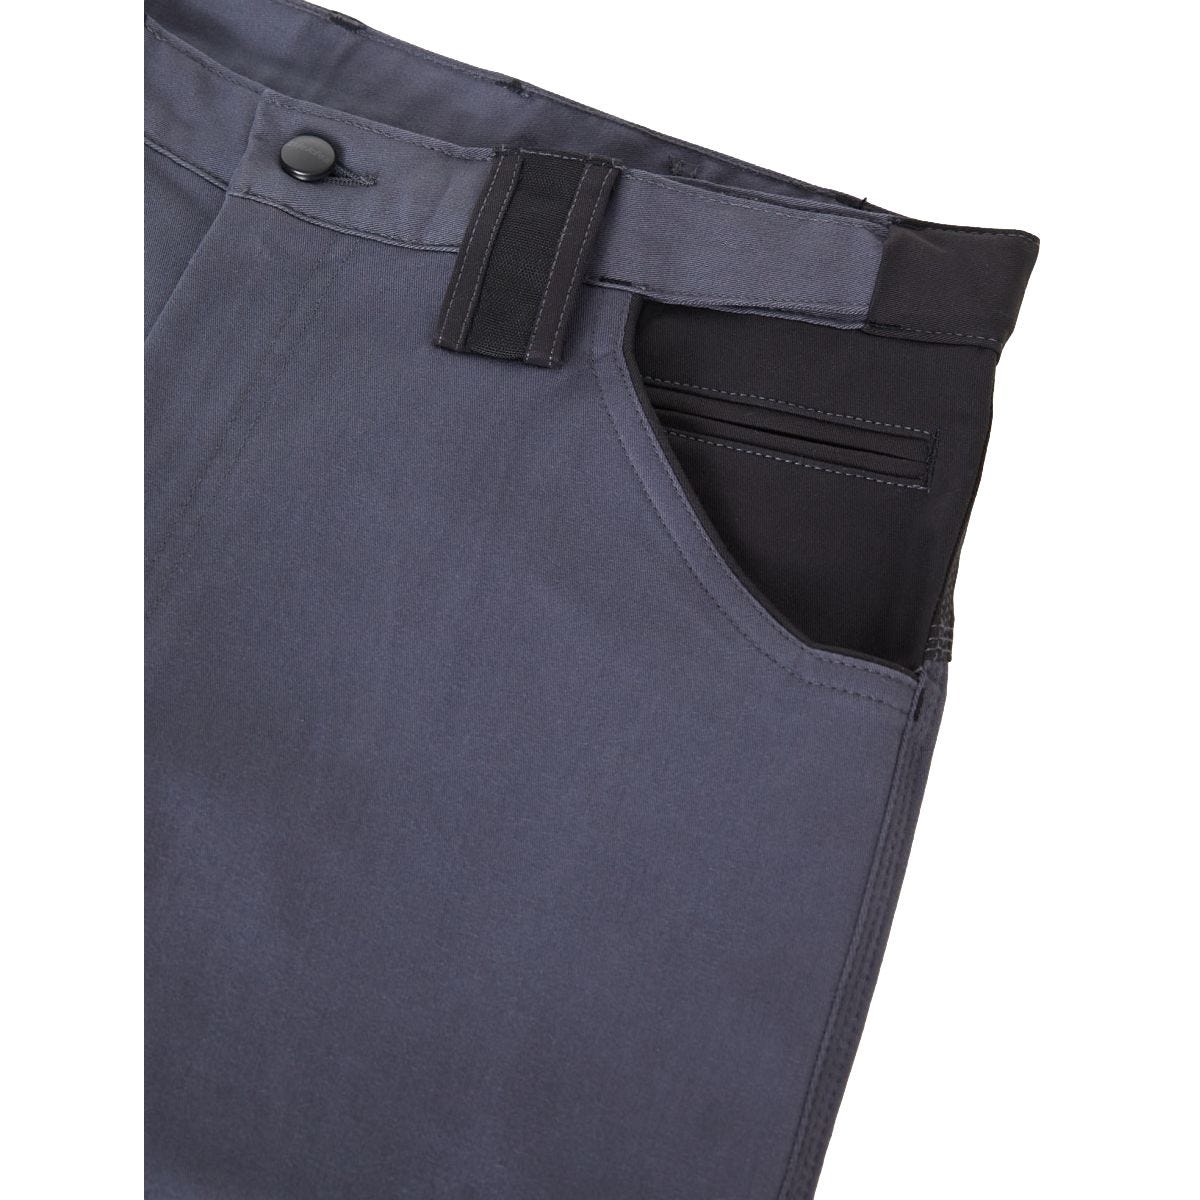 Pantalon de travail GDT Premium gris/noir - Dickies - Taille 46 4